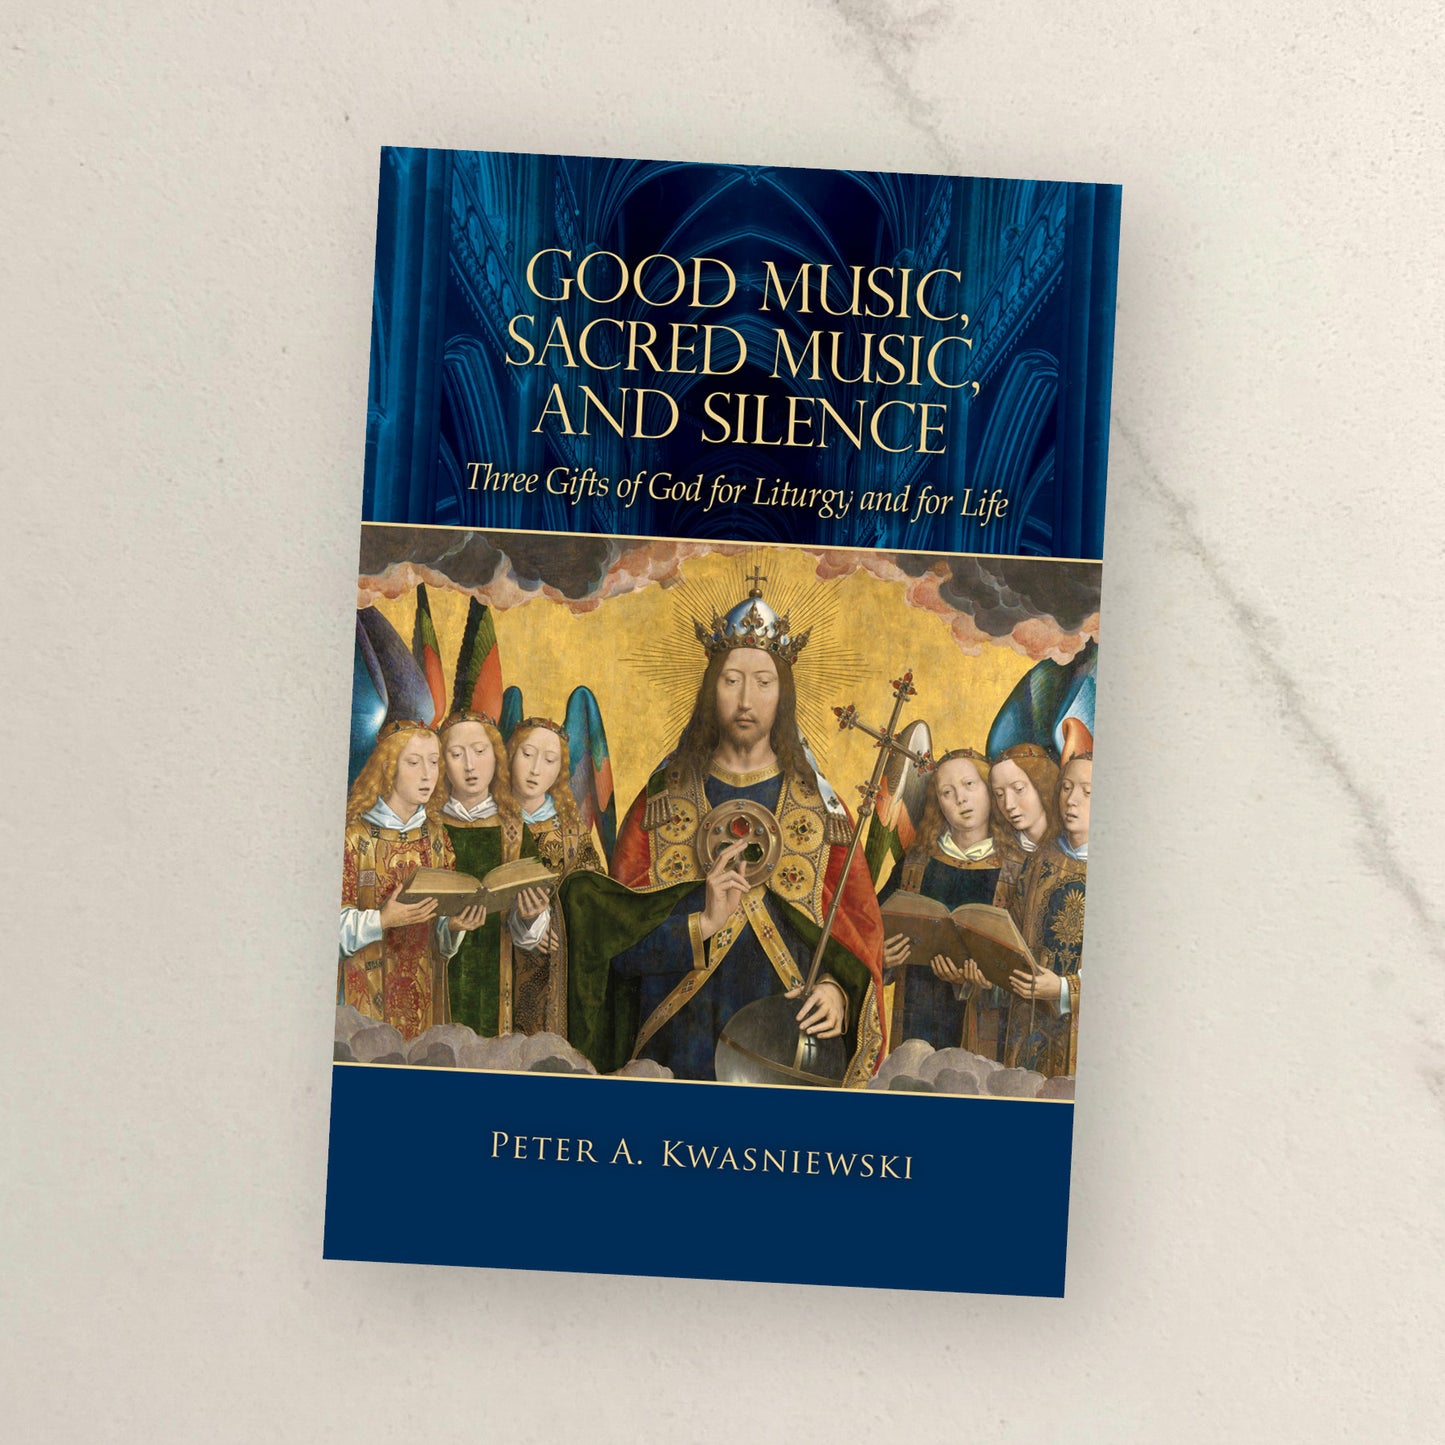 Good Music, Sacred Music, and Silence